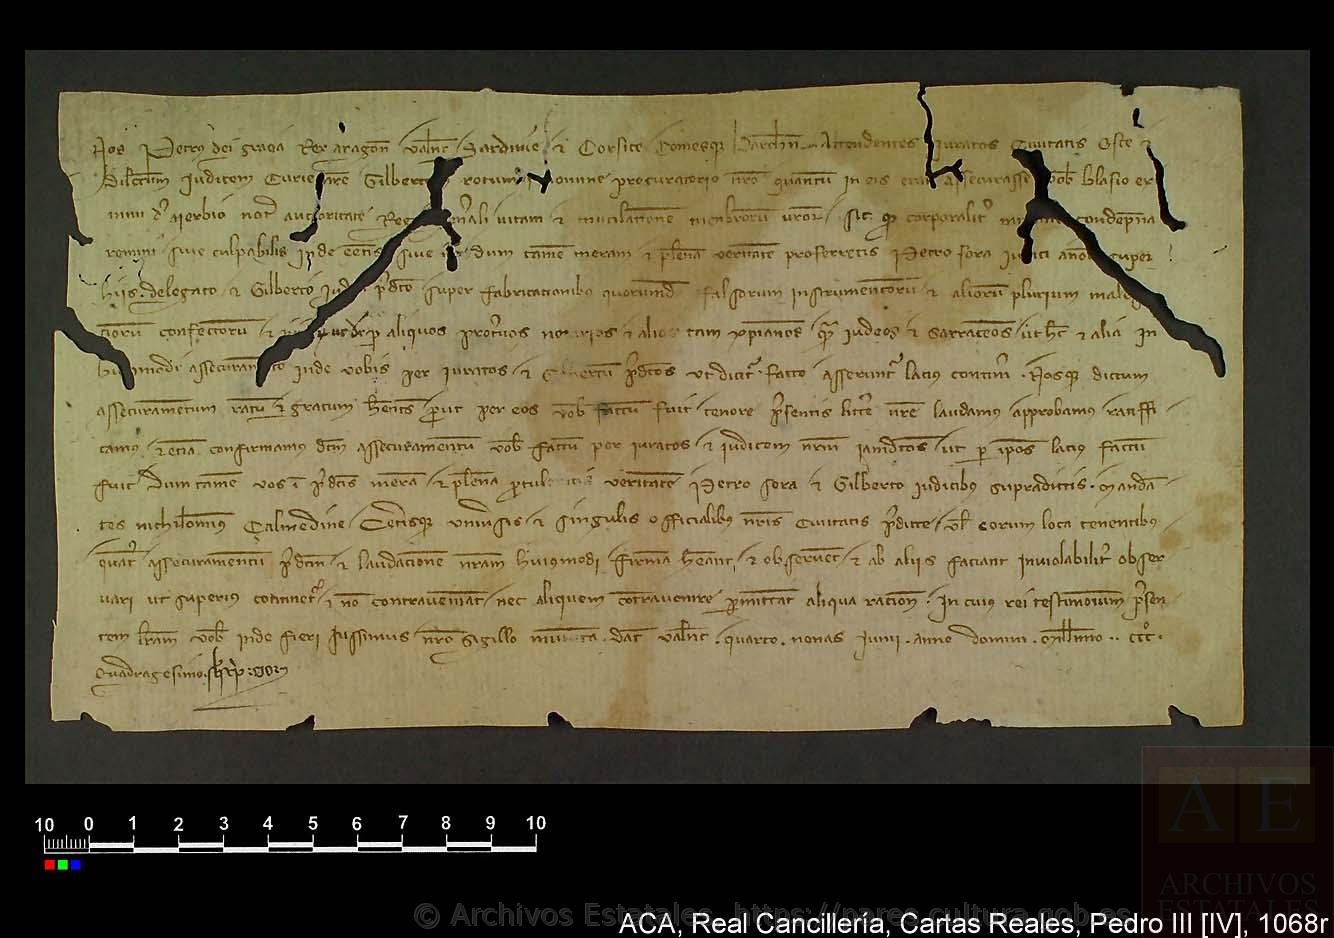  Archivo de la Corona de Aragón, Statement given by Pedro el Ceremonioso to Blas Jiménez de Ayerbe that reassures him of the authenticity about certain documents, available here
